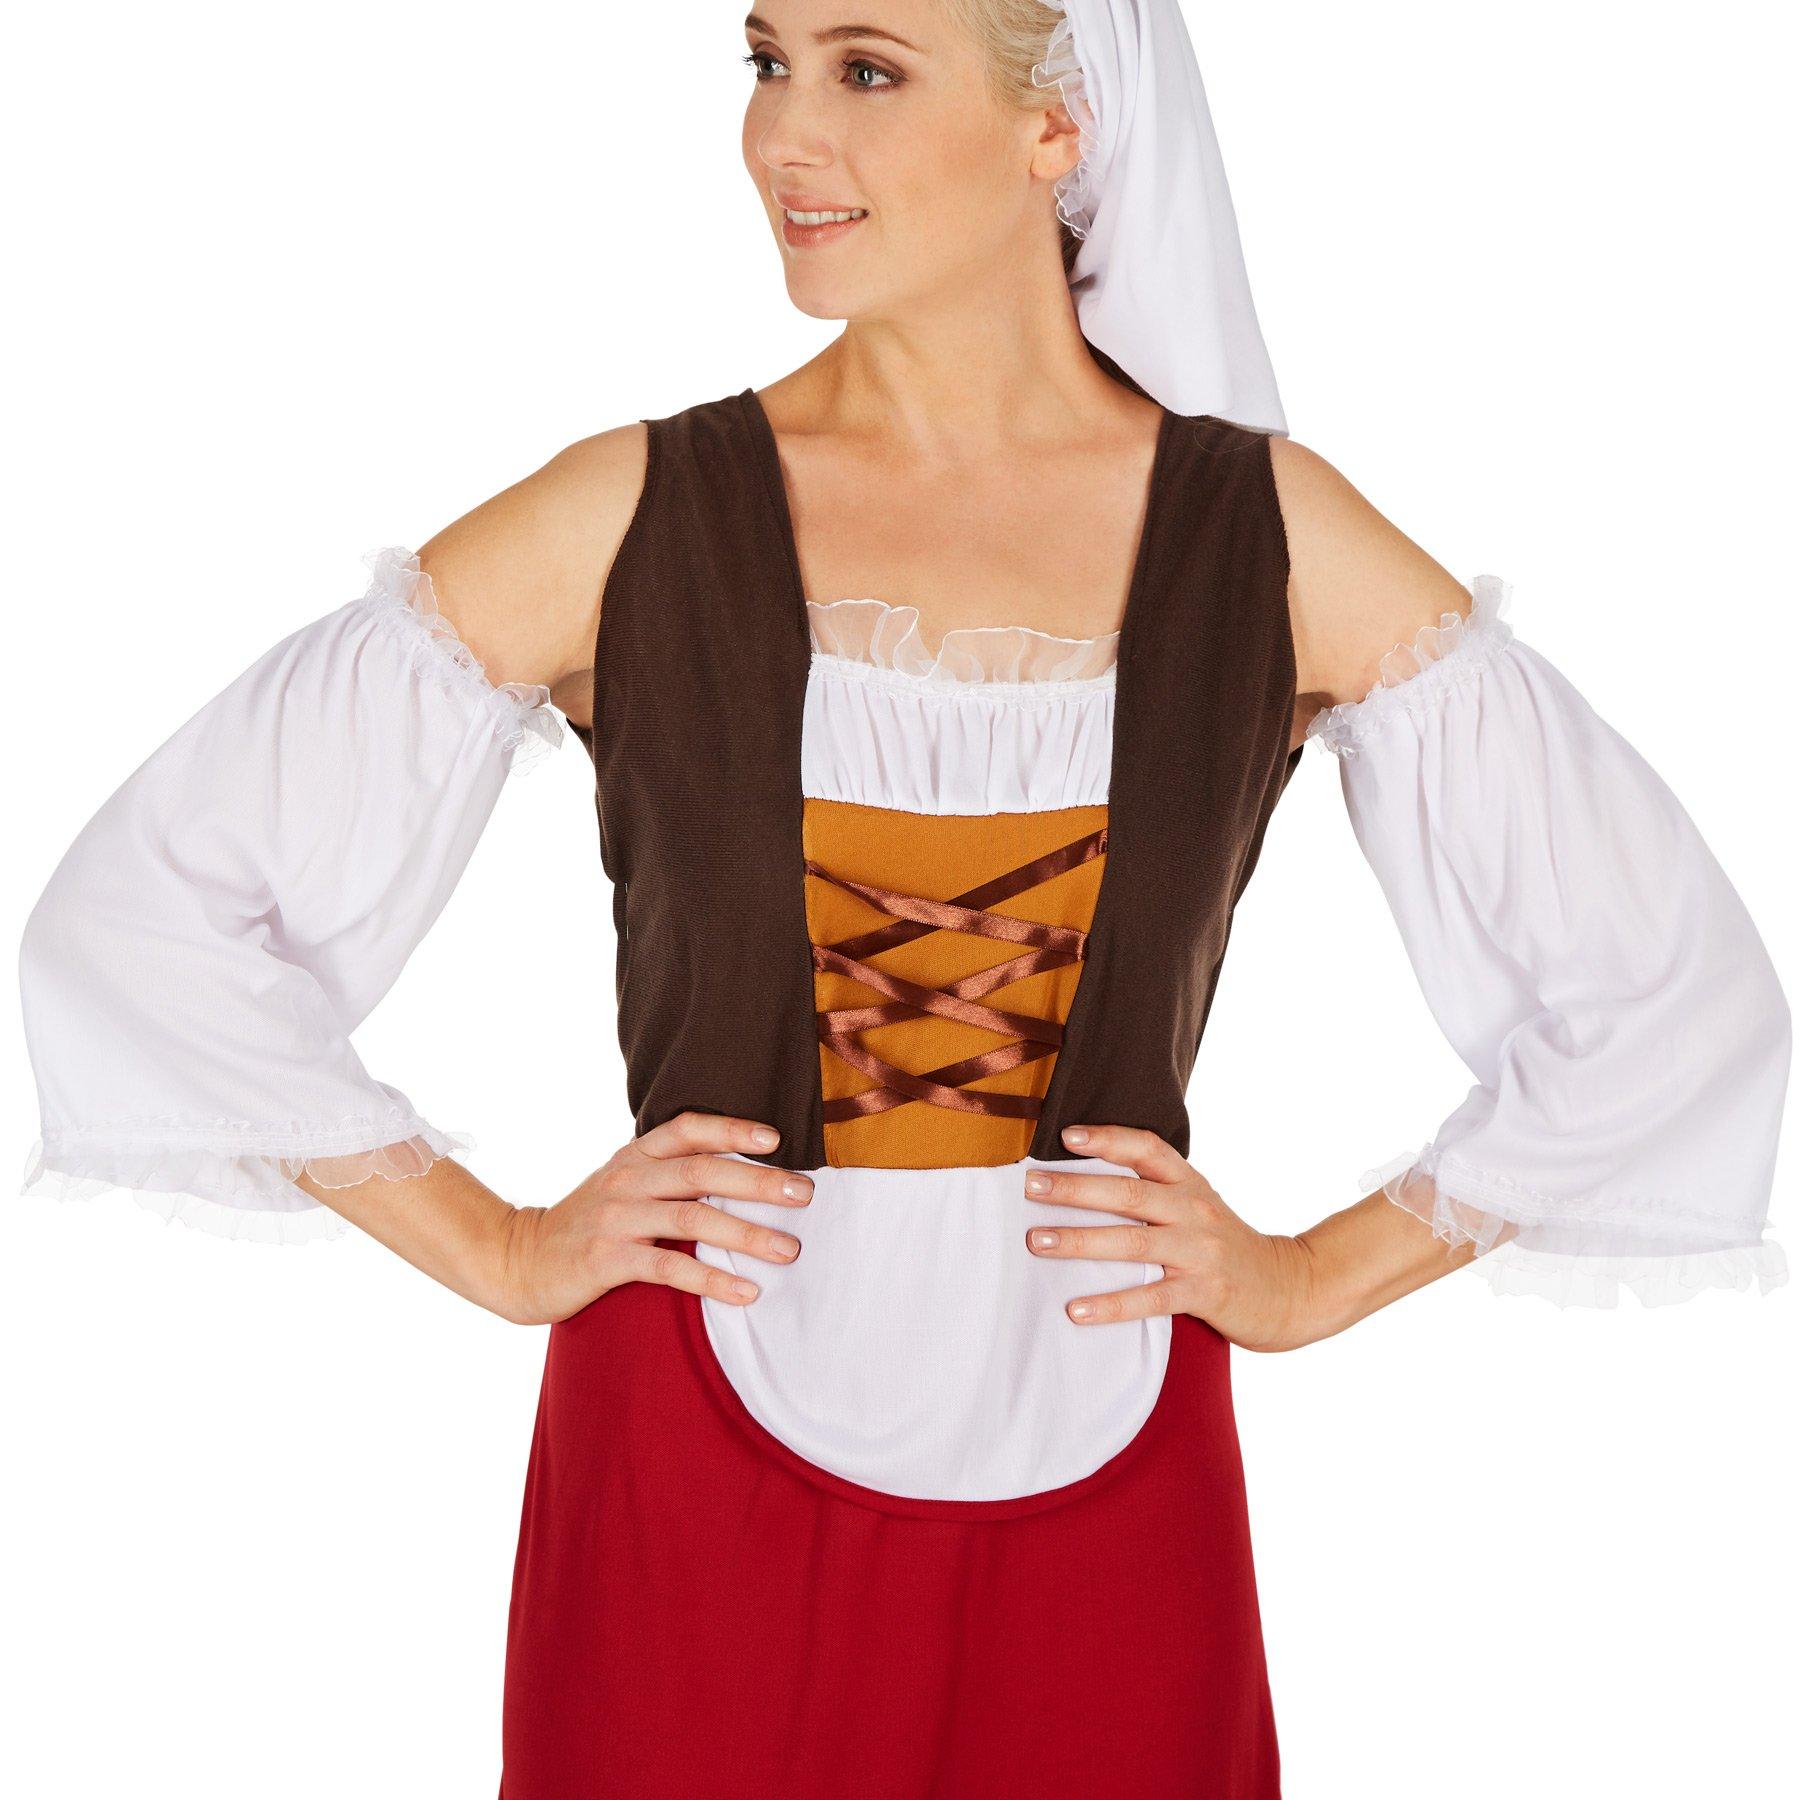 Tectake  Costume da donna - Serva medievale 